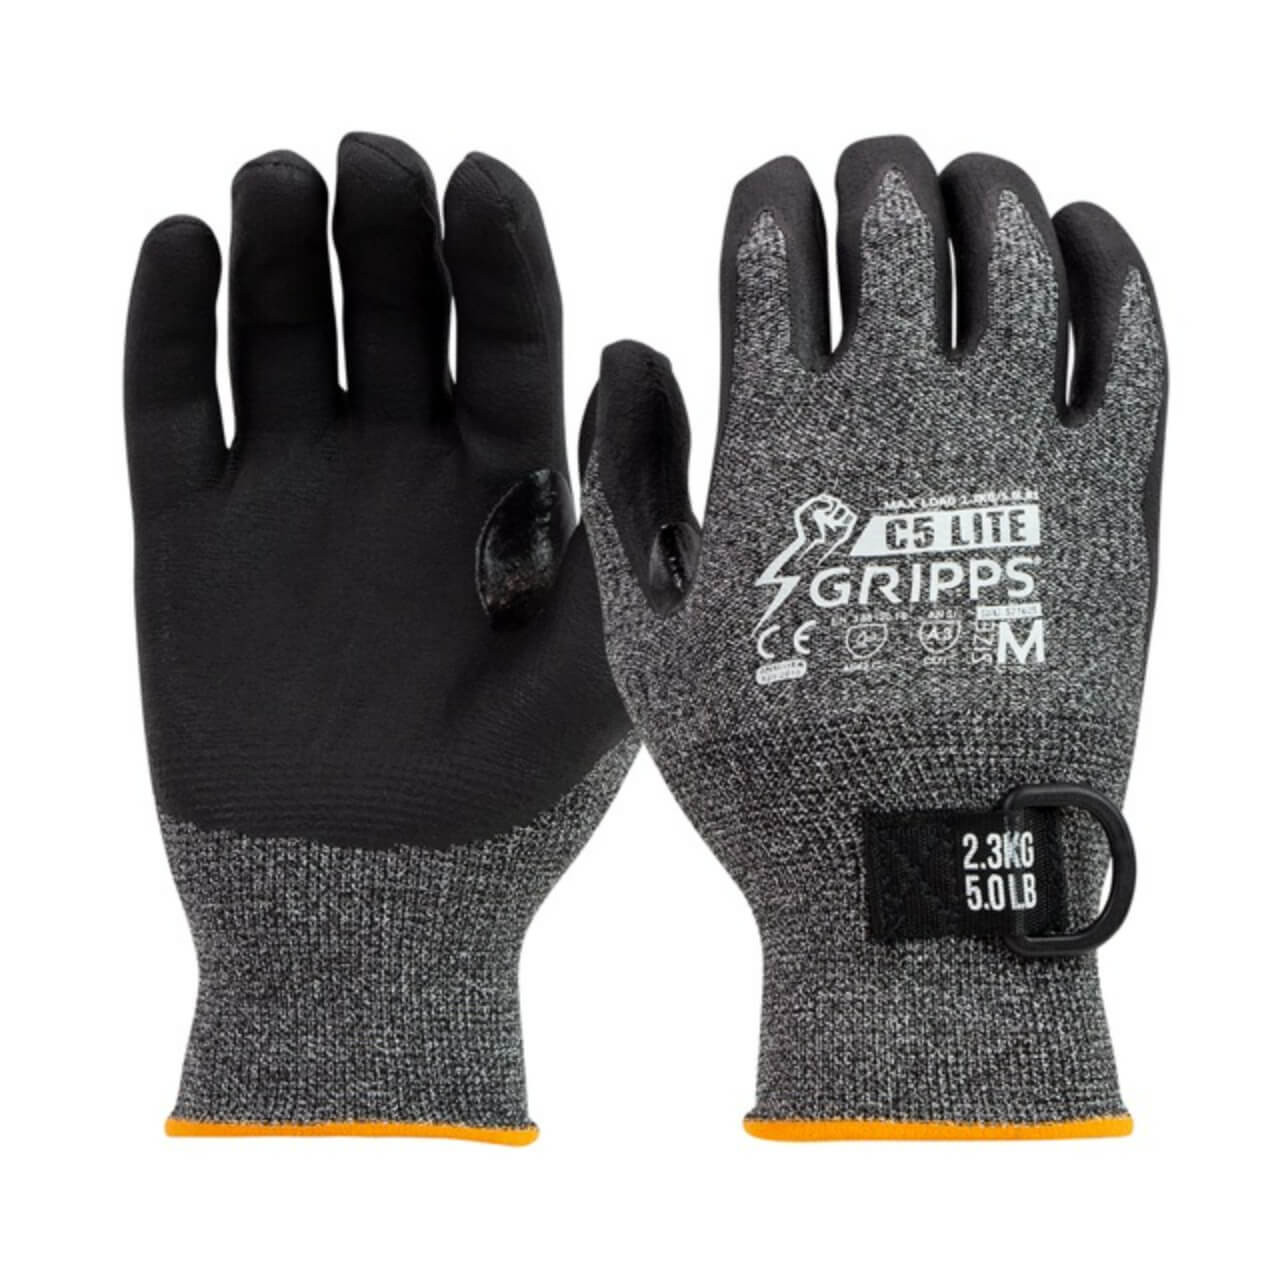 GRIPPS C5 FlexiLite MKII Gloves 2.3kg Max Load